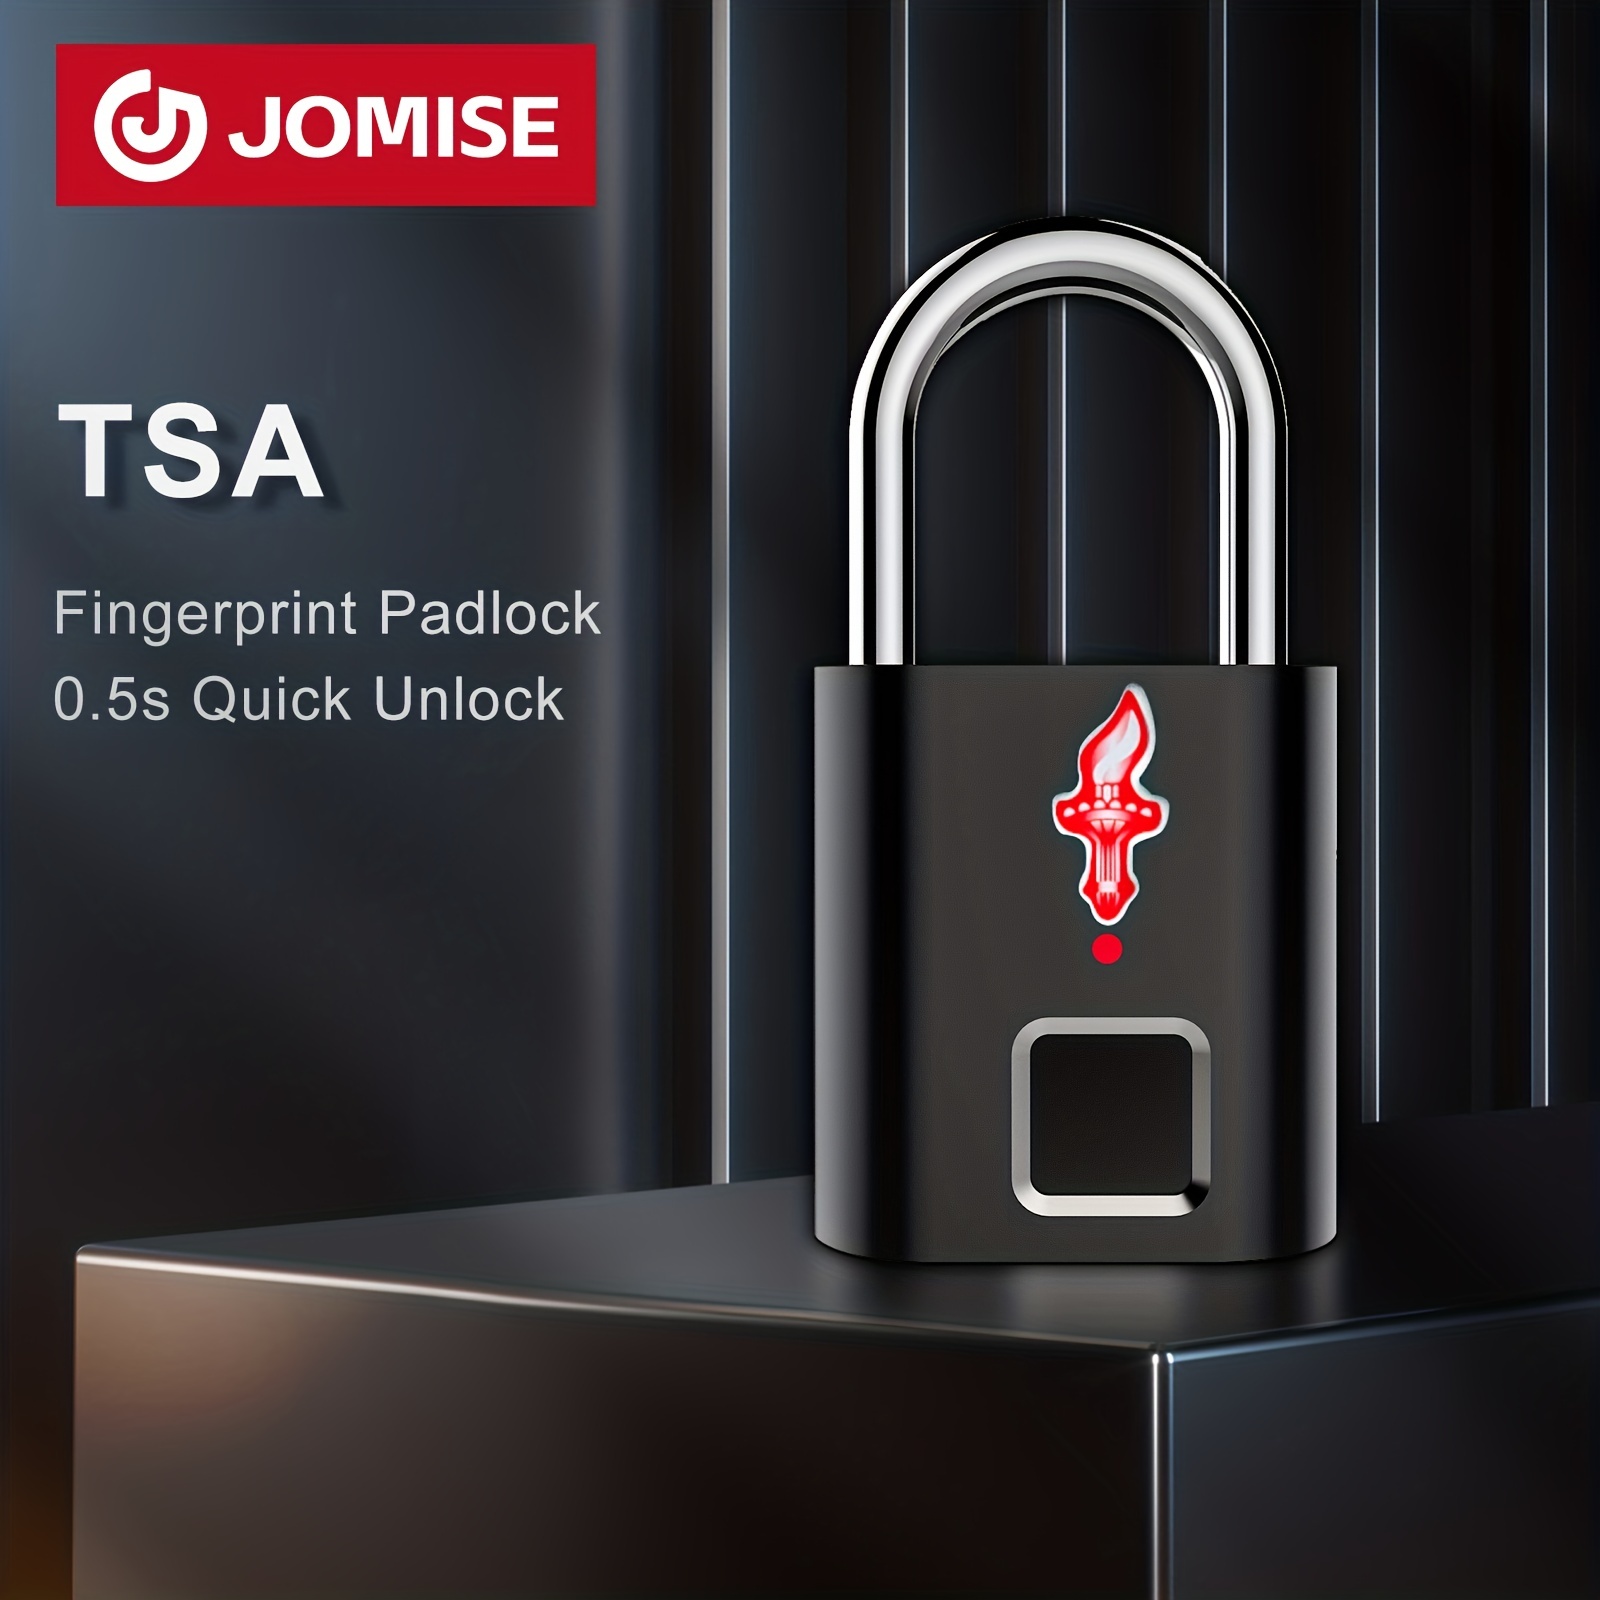 Buy Keyless Smart Fingerprint Padlock for TSA Approved Luggage Locks